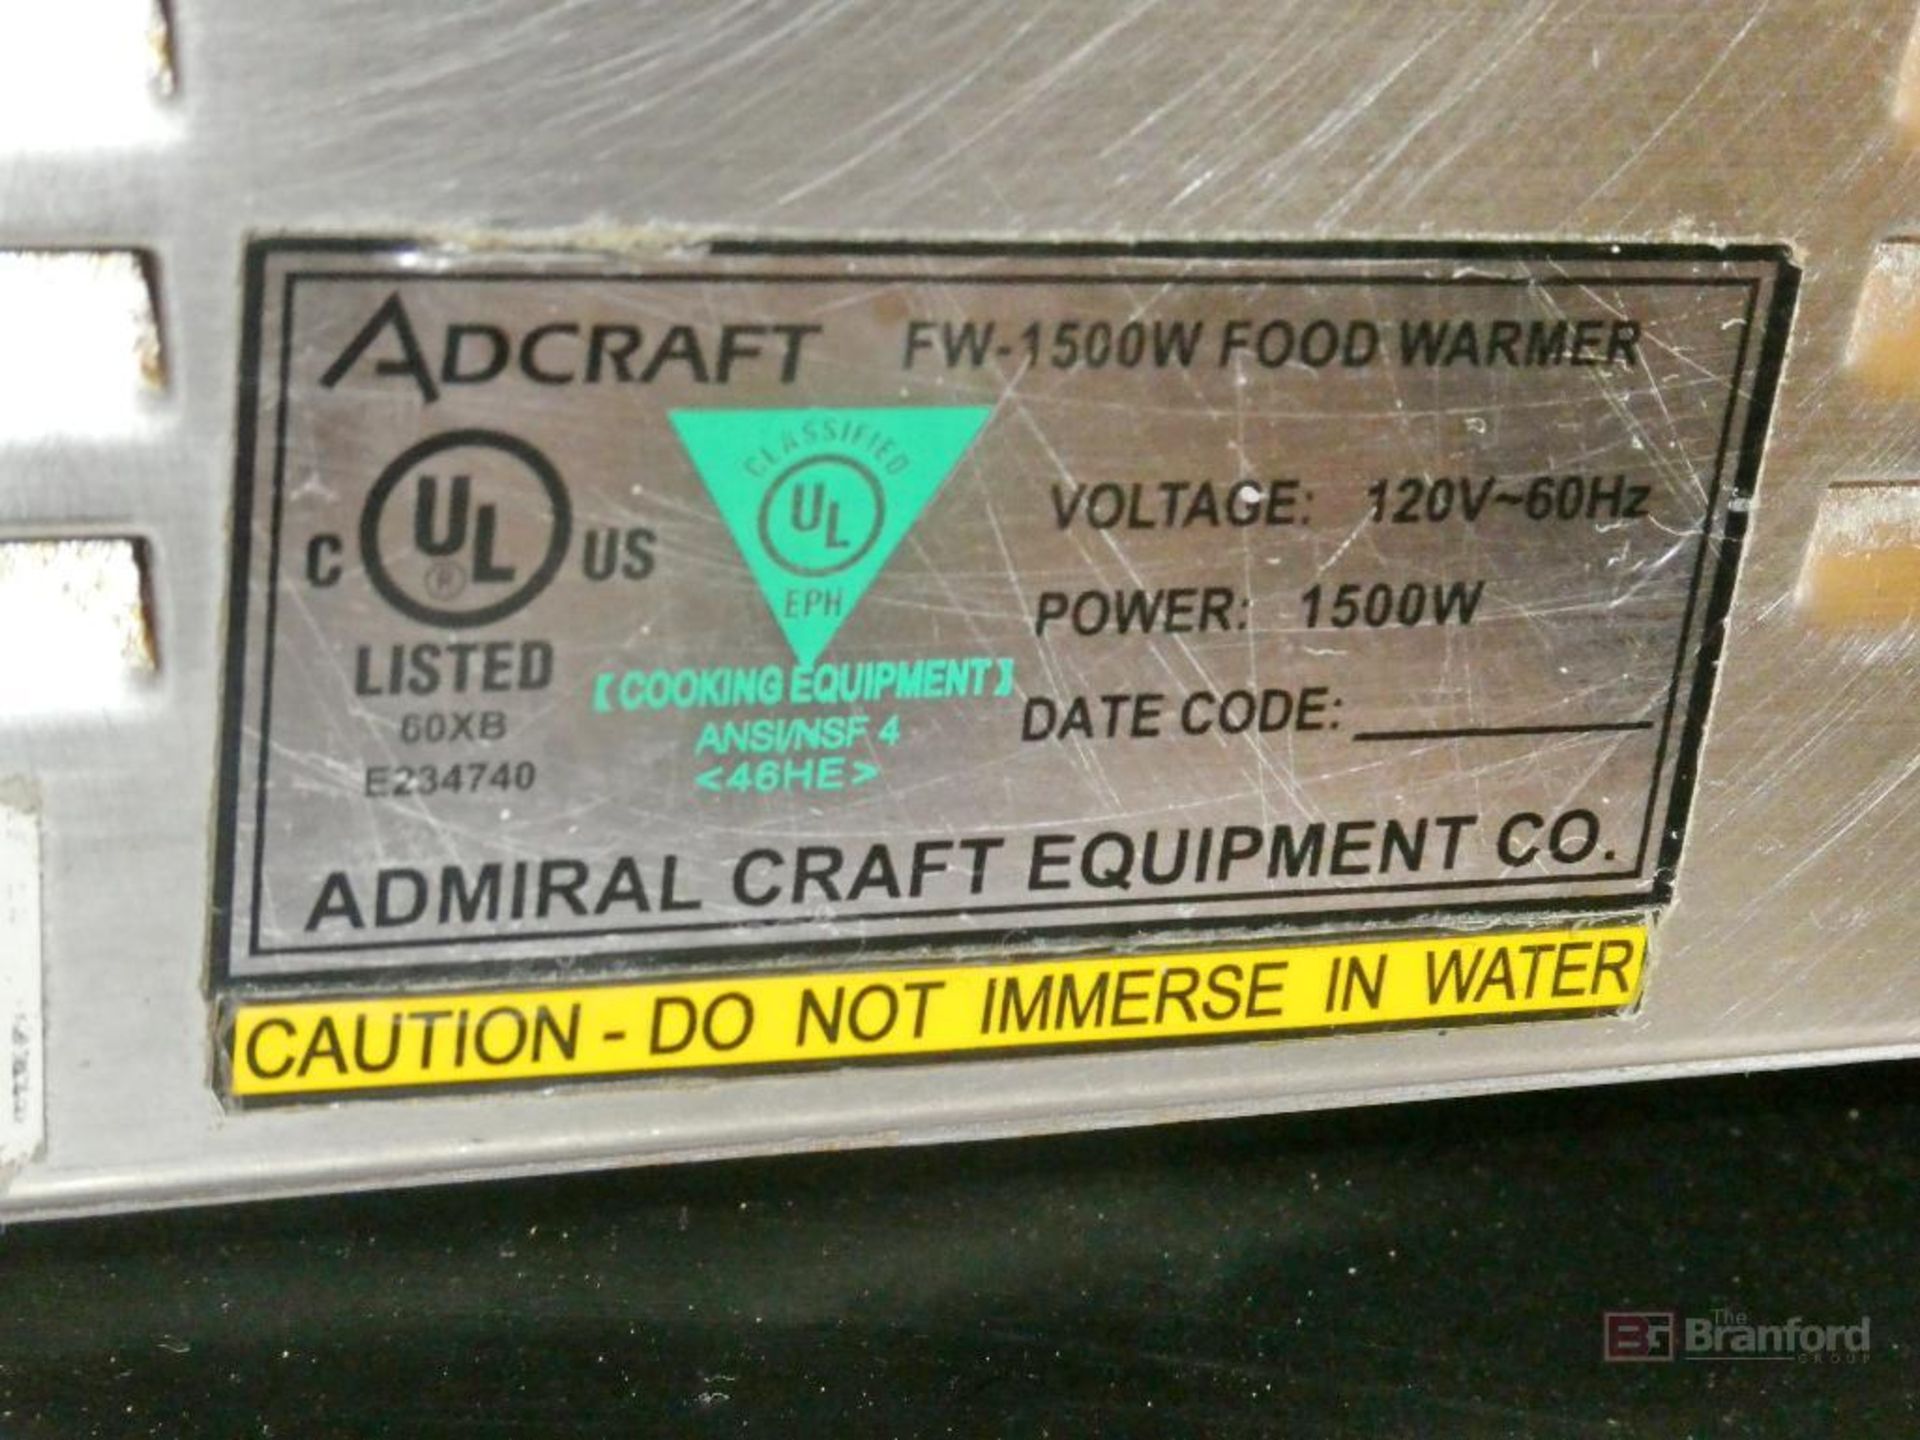 Adcraft Model FW 1500W, Food Warmer - Image 3 of 3